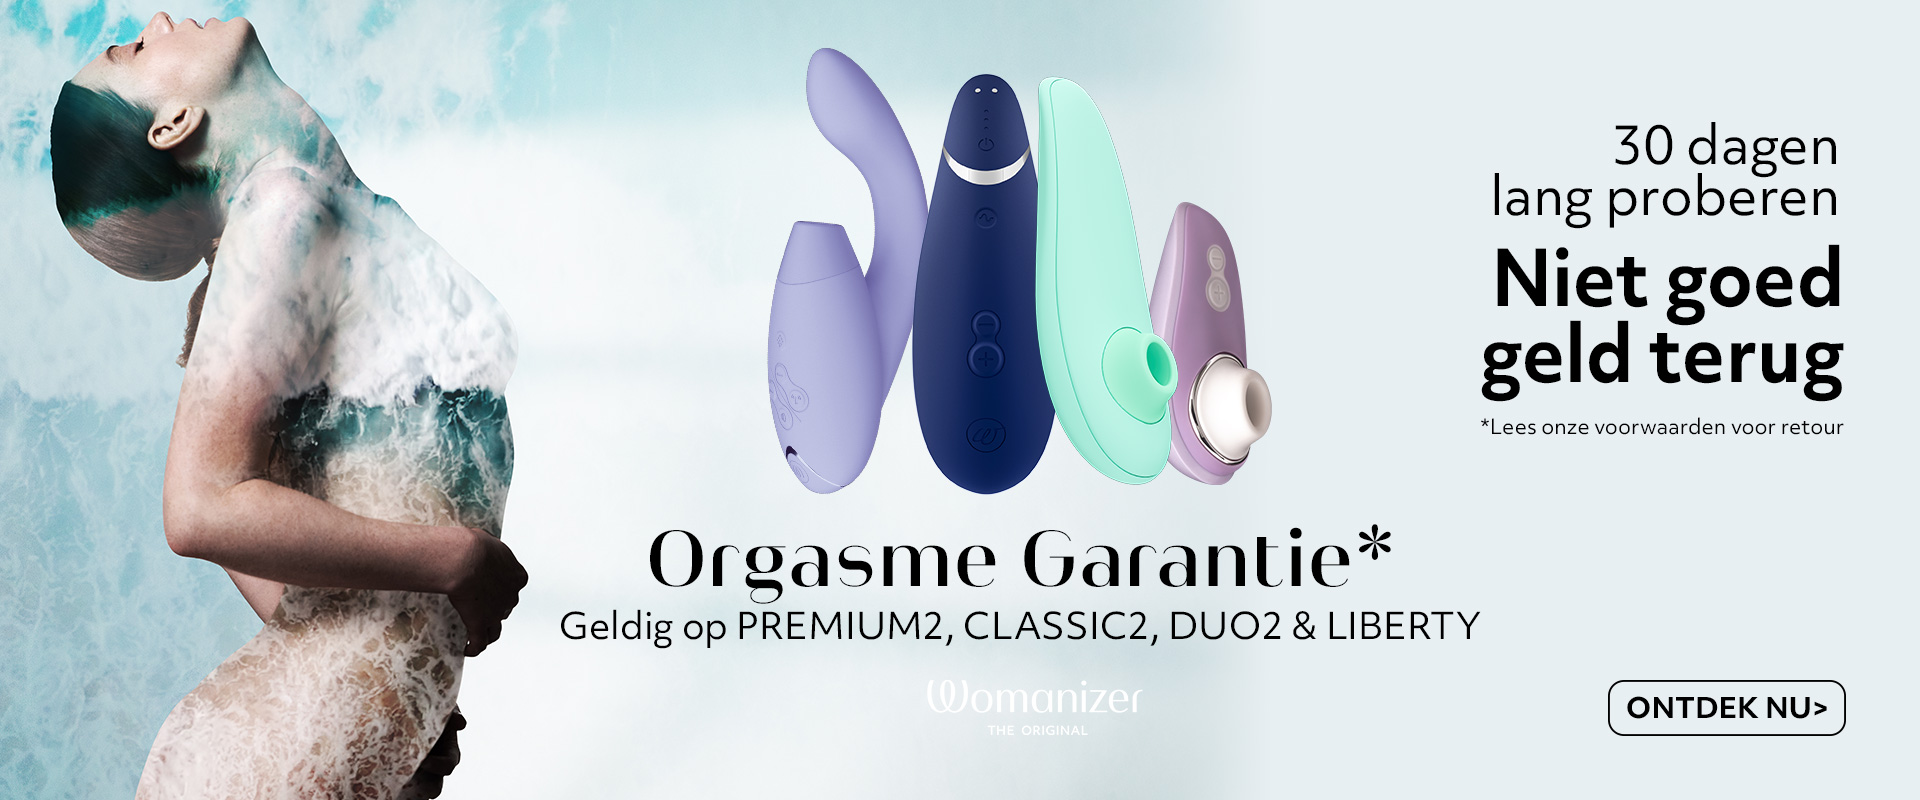 orgasme-garantie